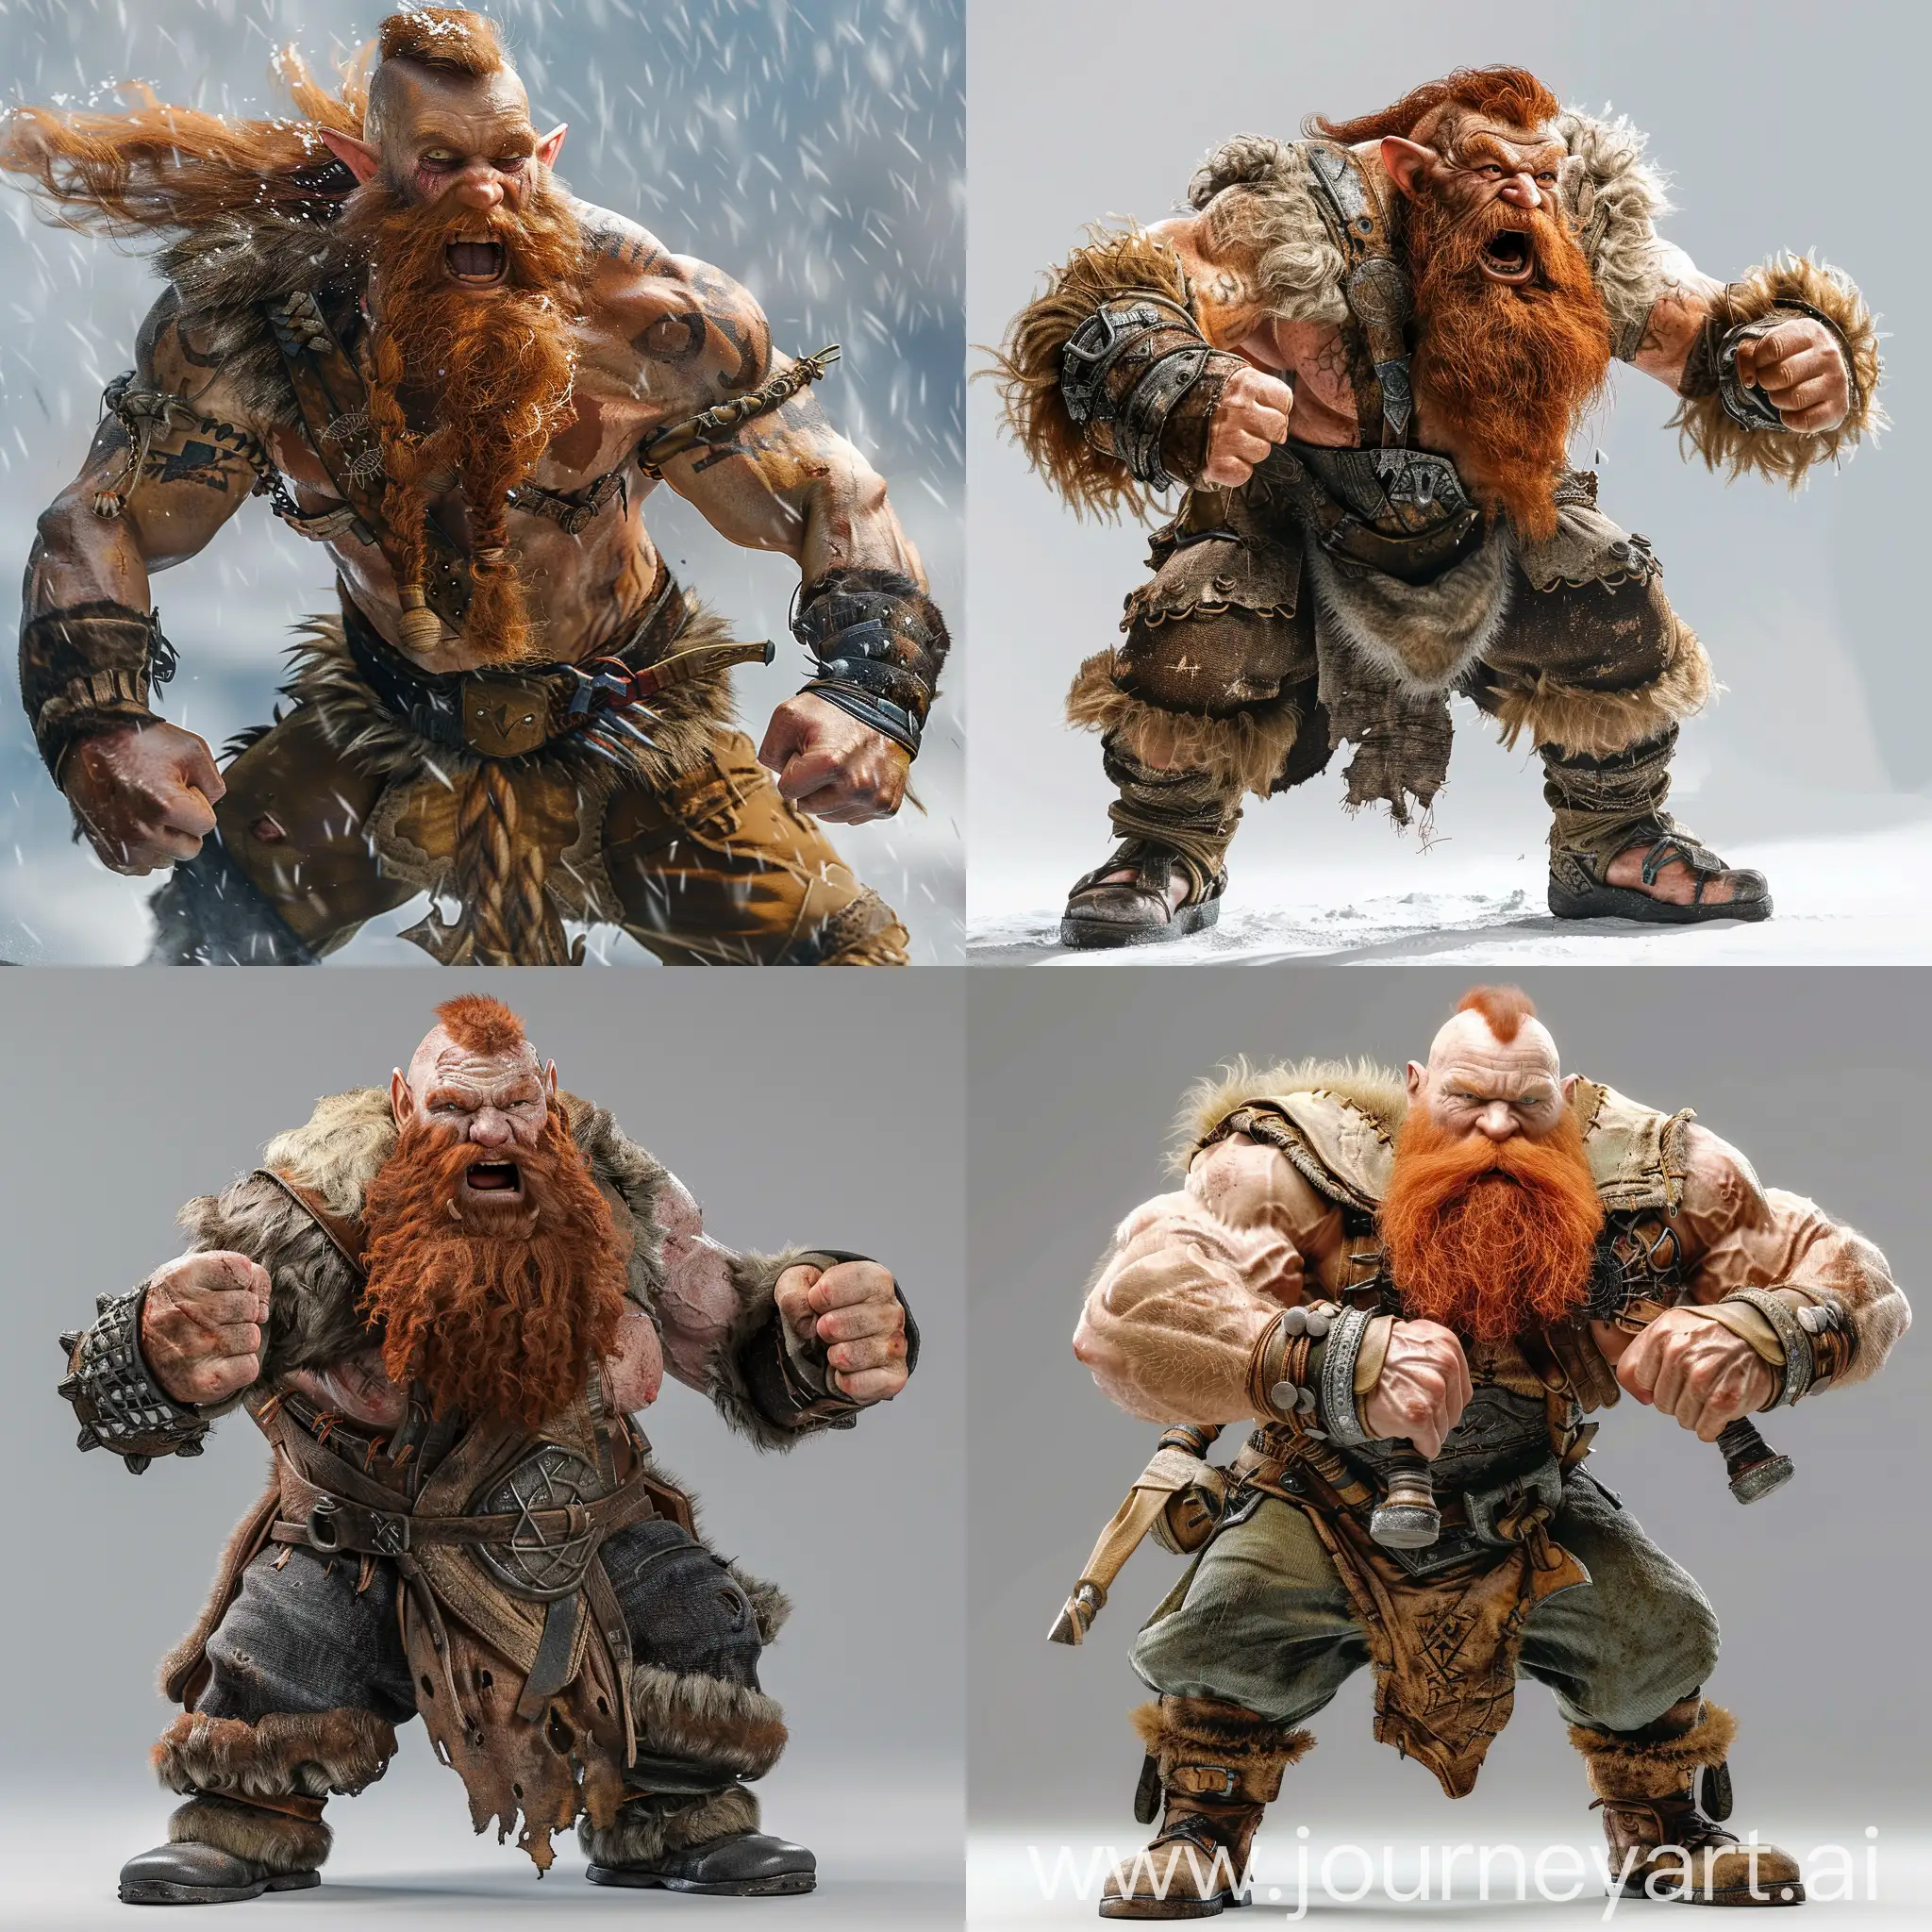 Fierce-Mountain-Dwarf-Barbarian-in-Zardoz-Attire-Ready-for-Battle